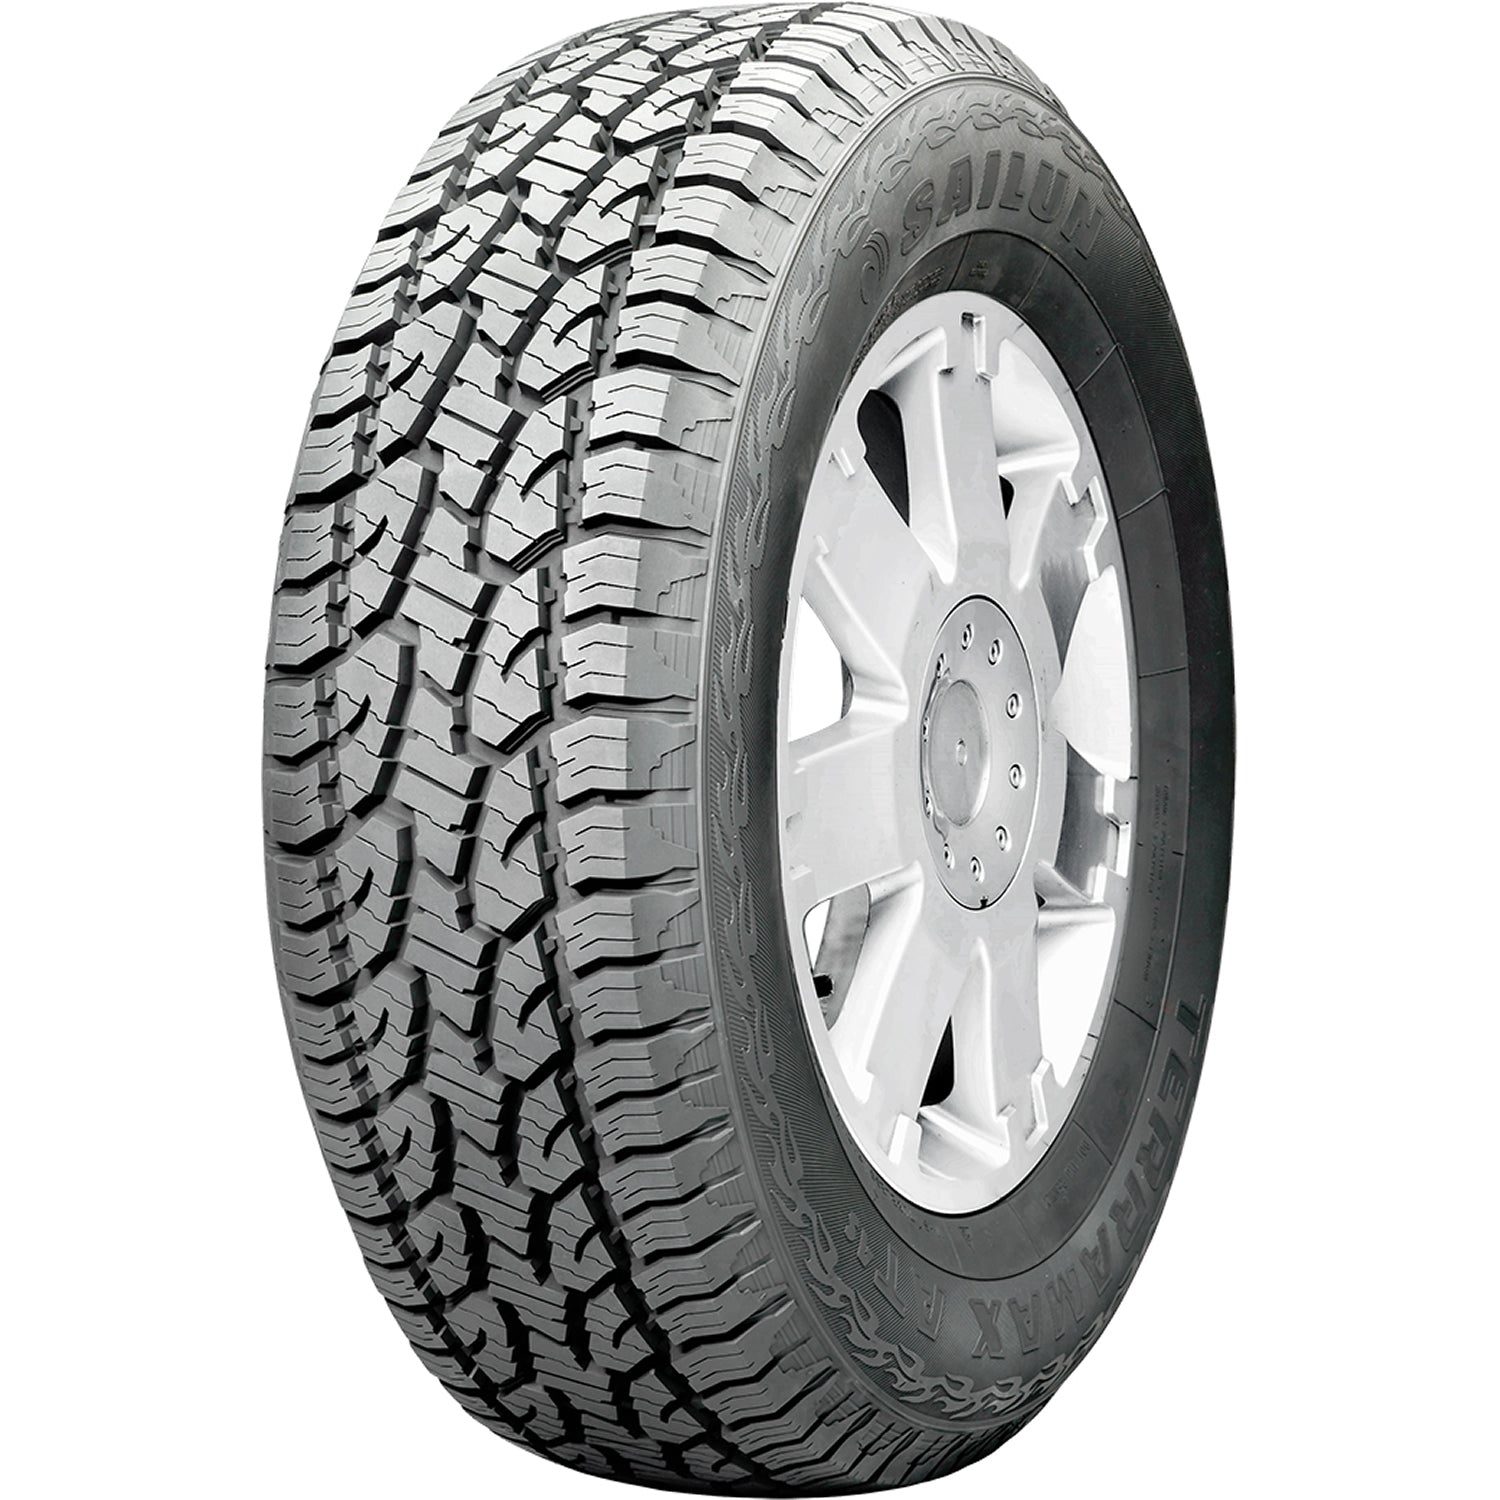 SAILUN TERRAMAX AT 4S 245/65R17 (29.5X9.8R 17) Tires